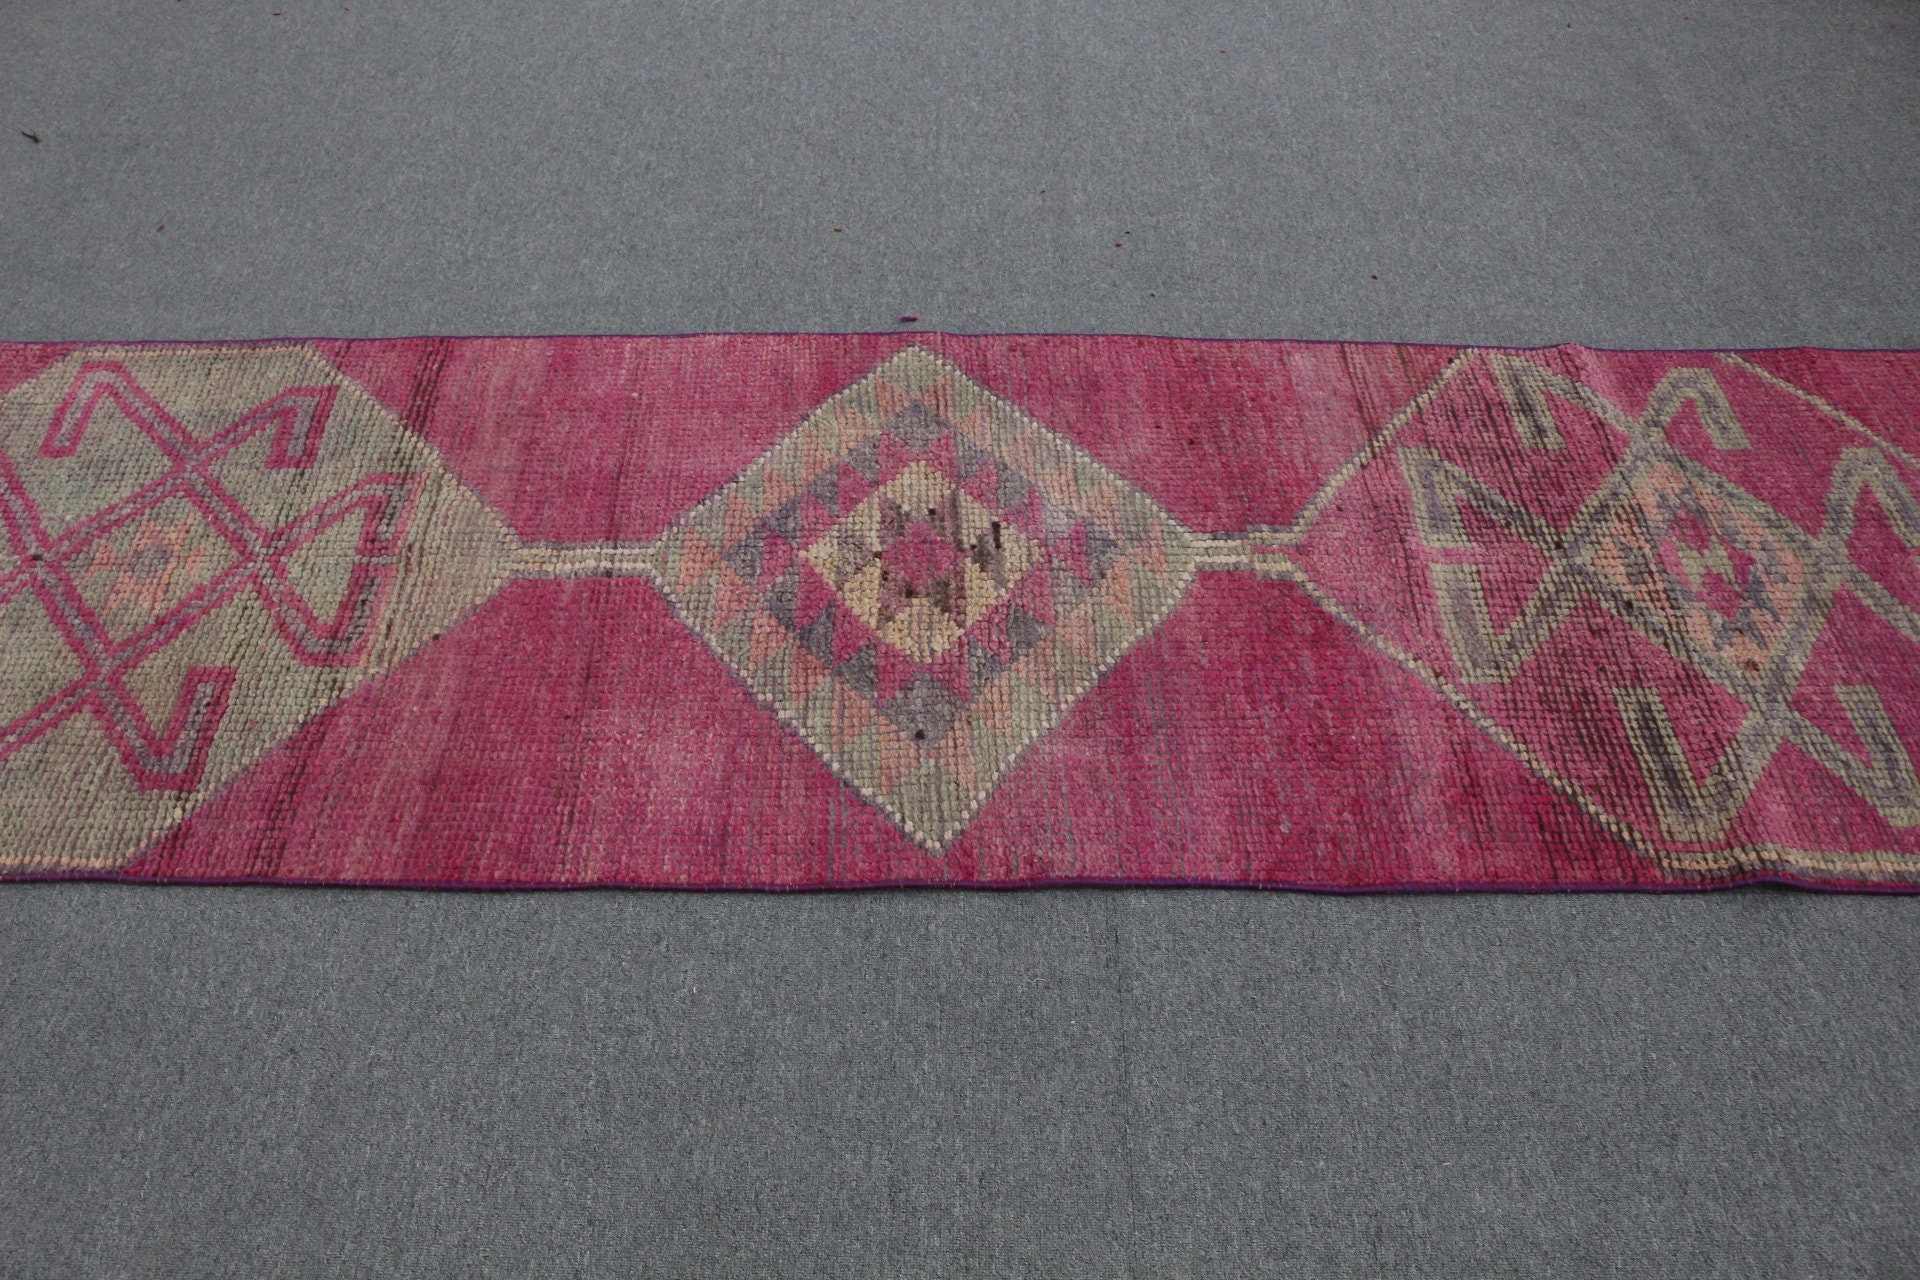 Turkish Rugs, Stair Rugs, Purple Oriental Rug, Natural Rugs, Corridor Rugs, Bedroom Rug, Vintage Rug, Antique Rug, 2.6x9.3 ft Runner Rug